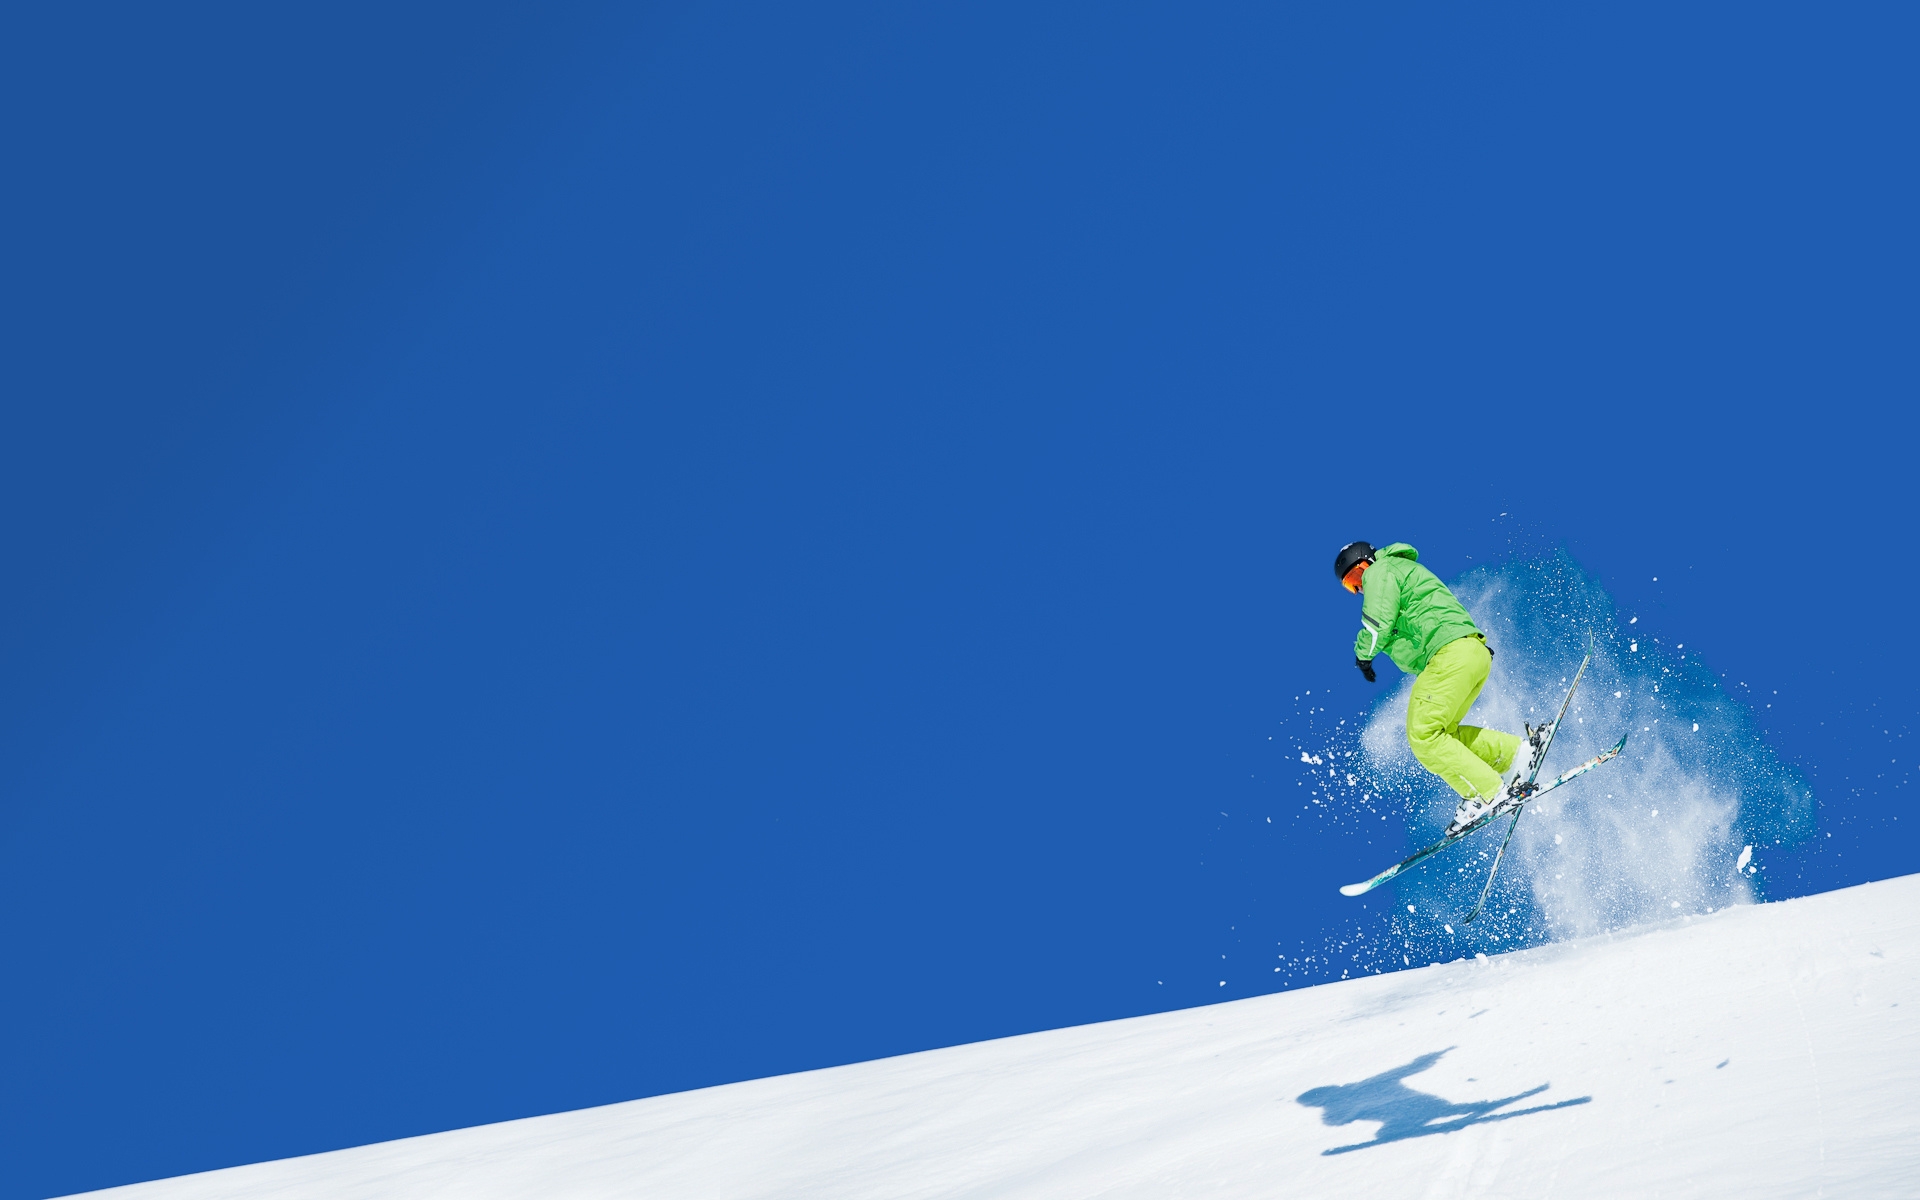 Картинки Горы, лыжник, прыжок, спорт, небо, снег, лыжи фото и обои на рабочий стол